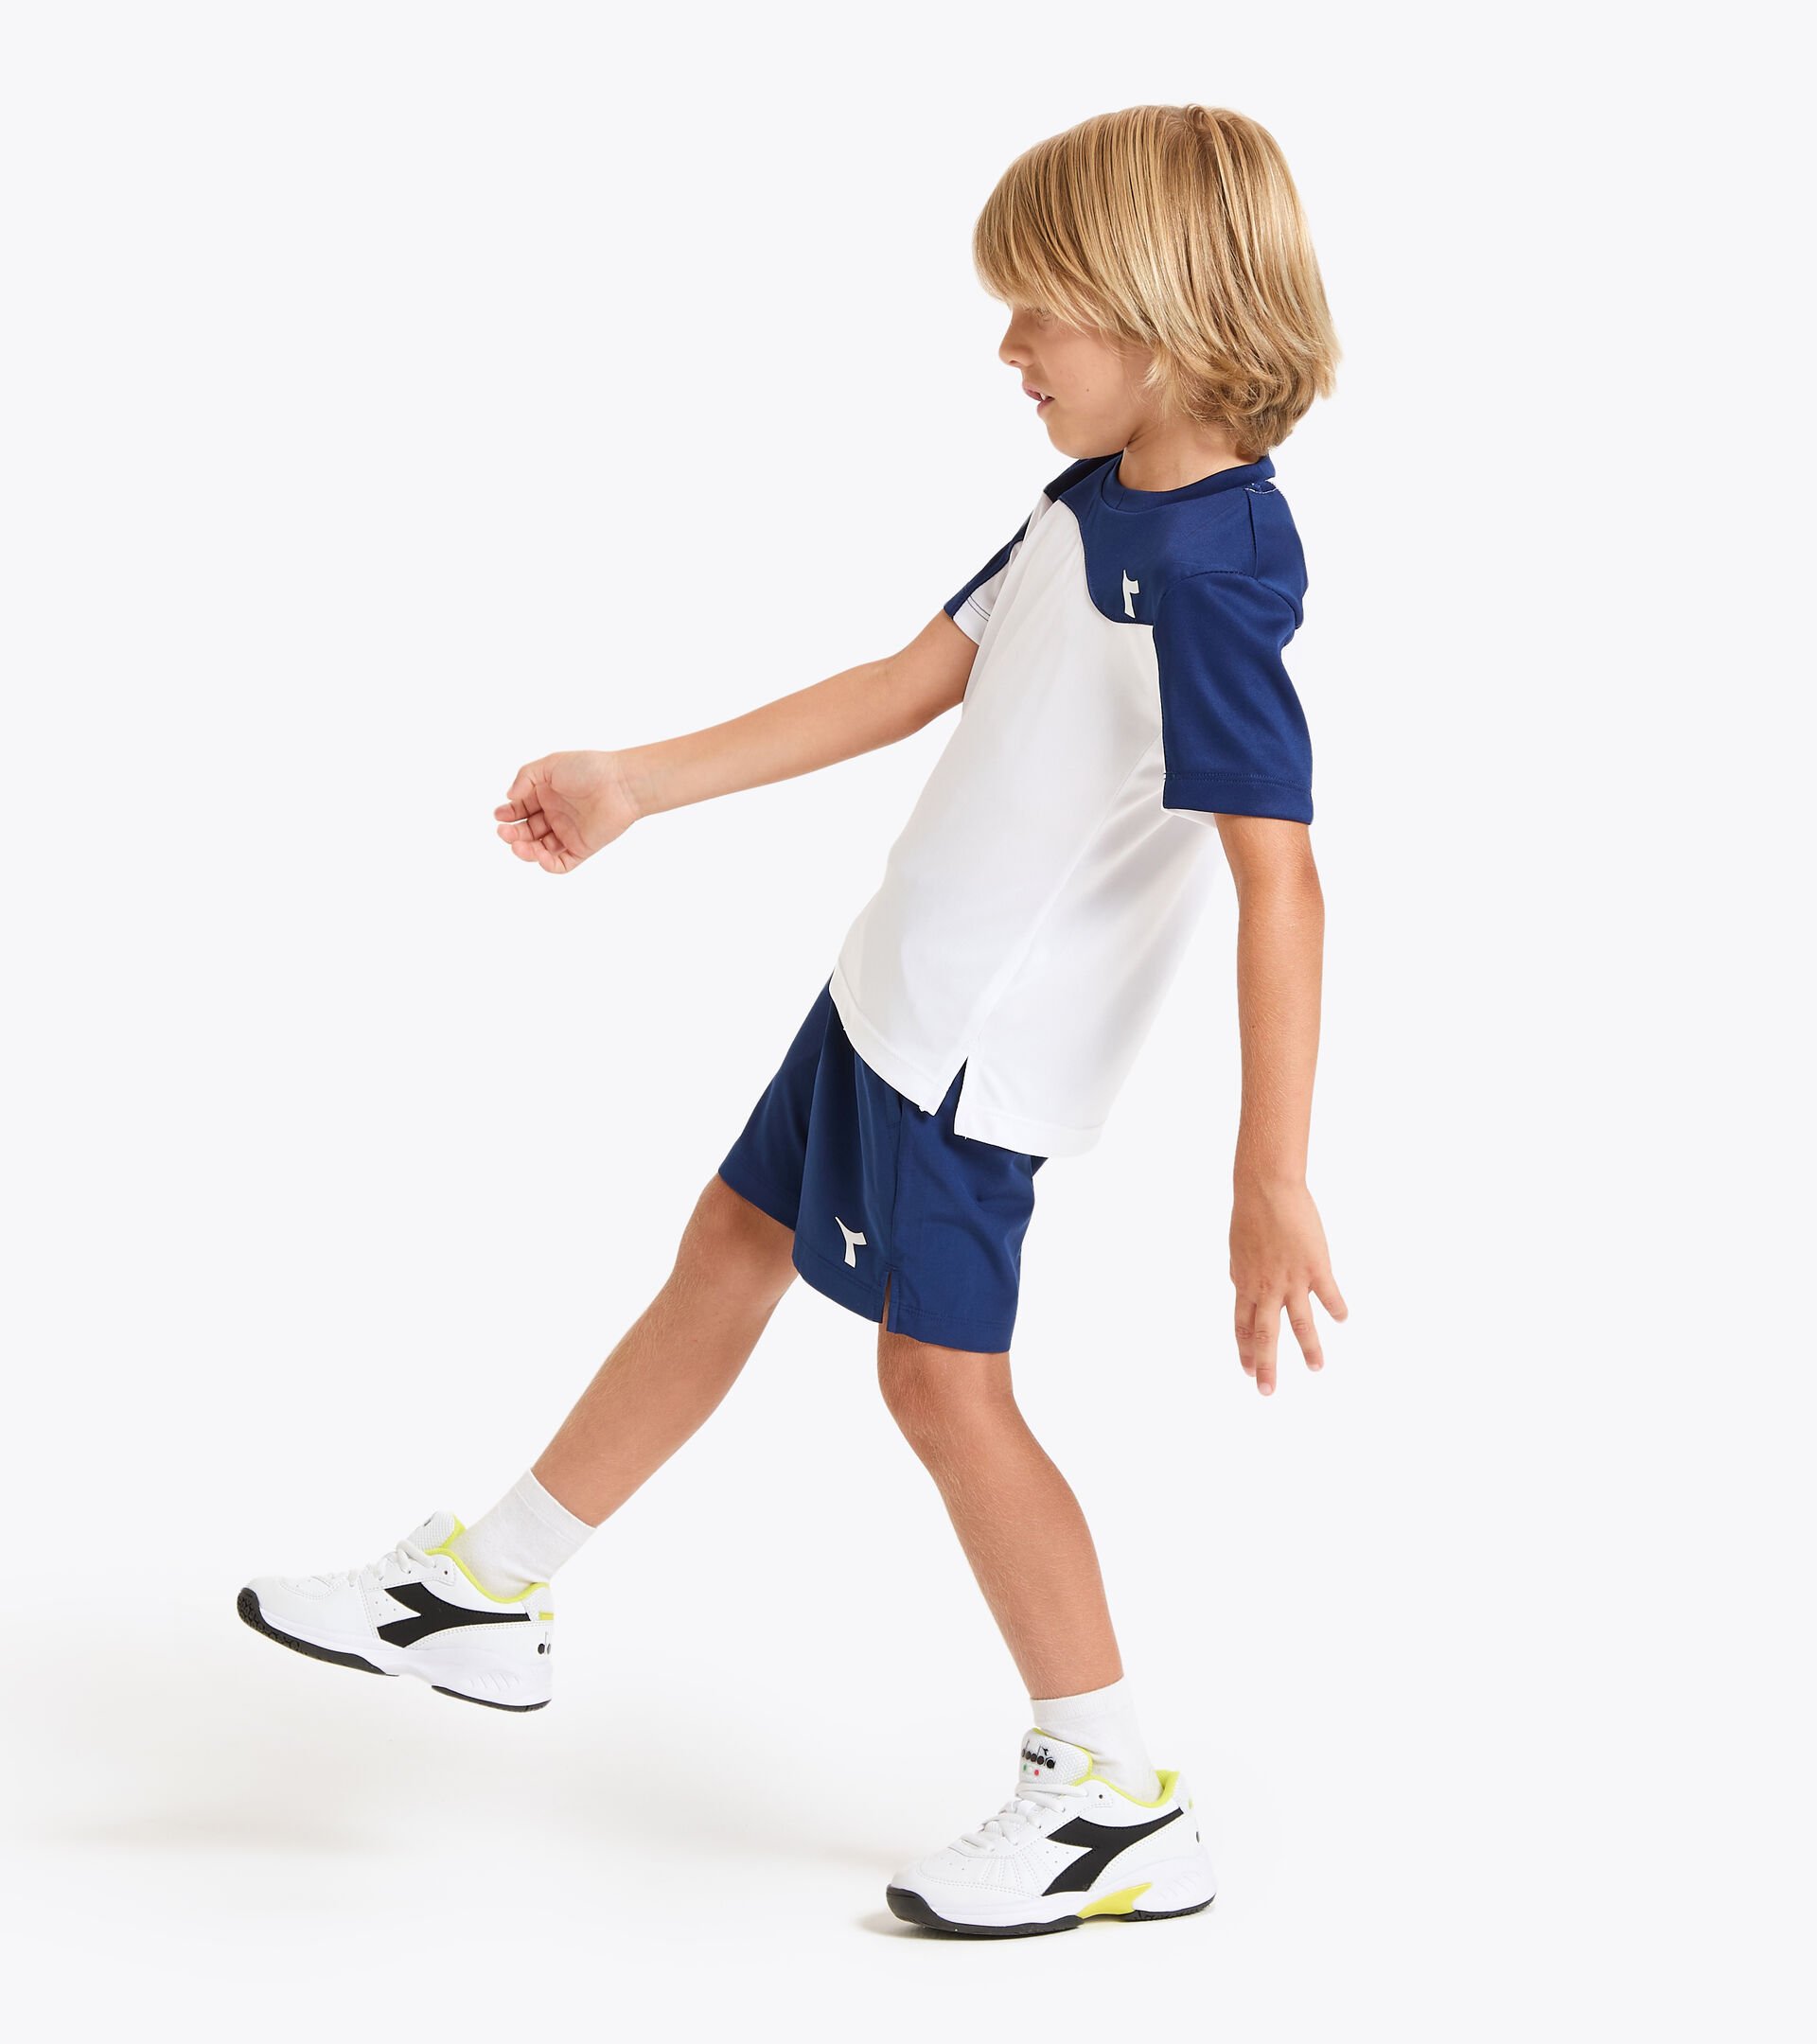 Camiseta de tenis - Junior J. T-SHIRT TEAM AZUL FINCA - Diadora